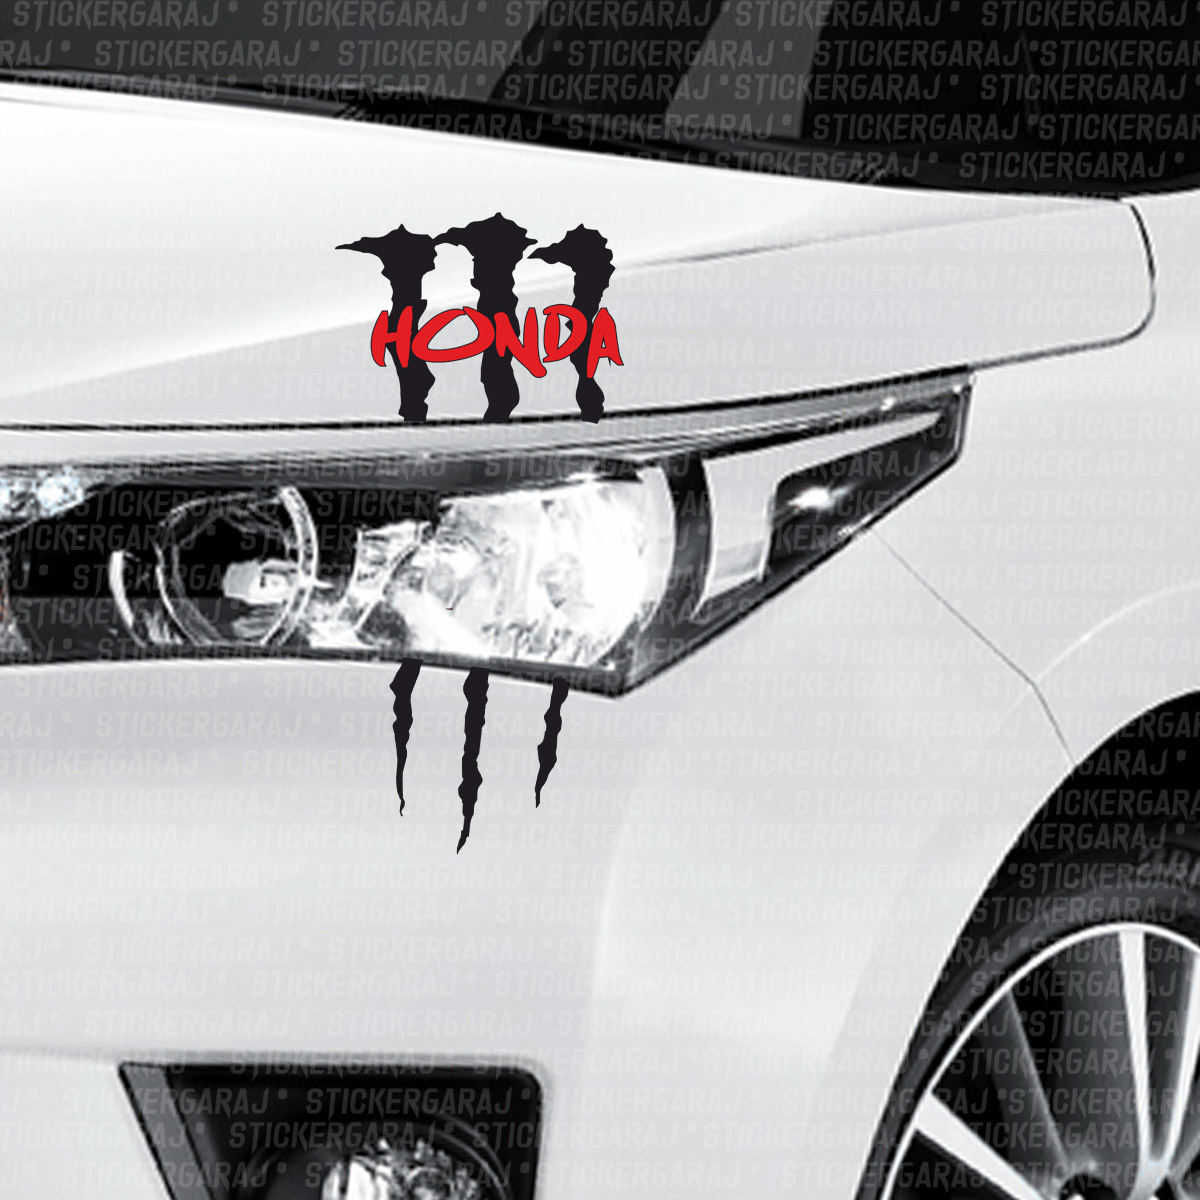 Honda monsterr sticker - Honda Monster Sticker